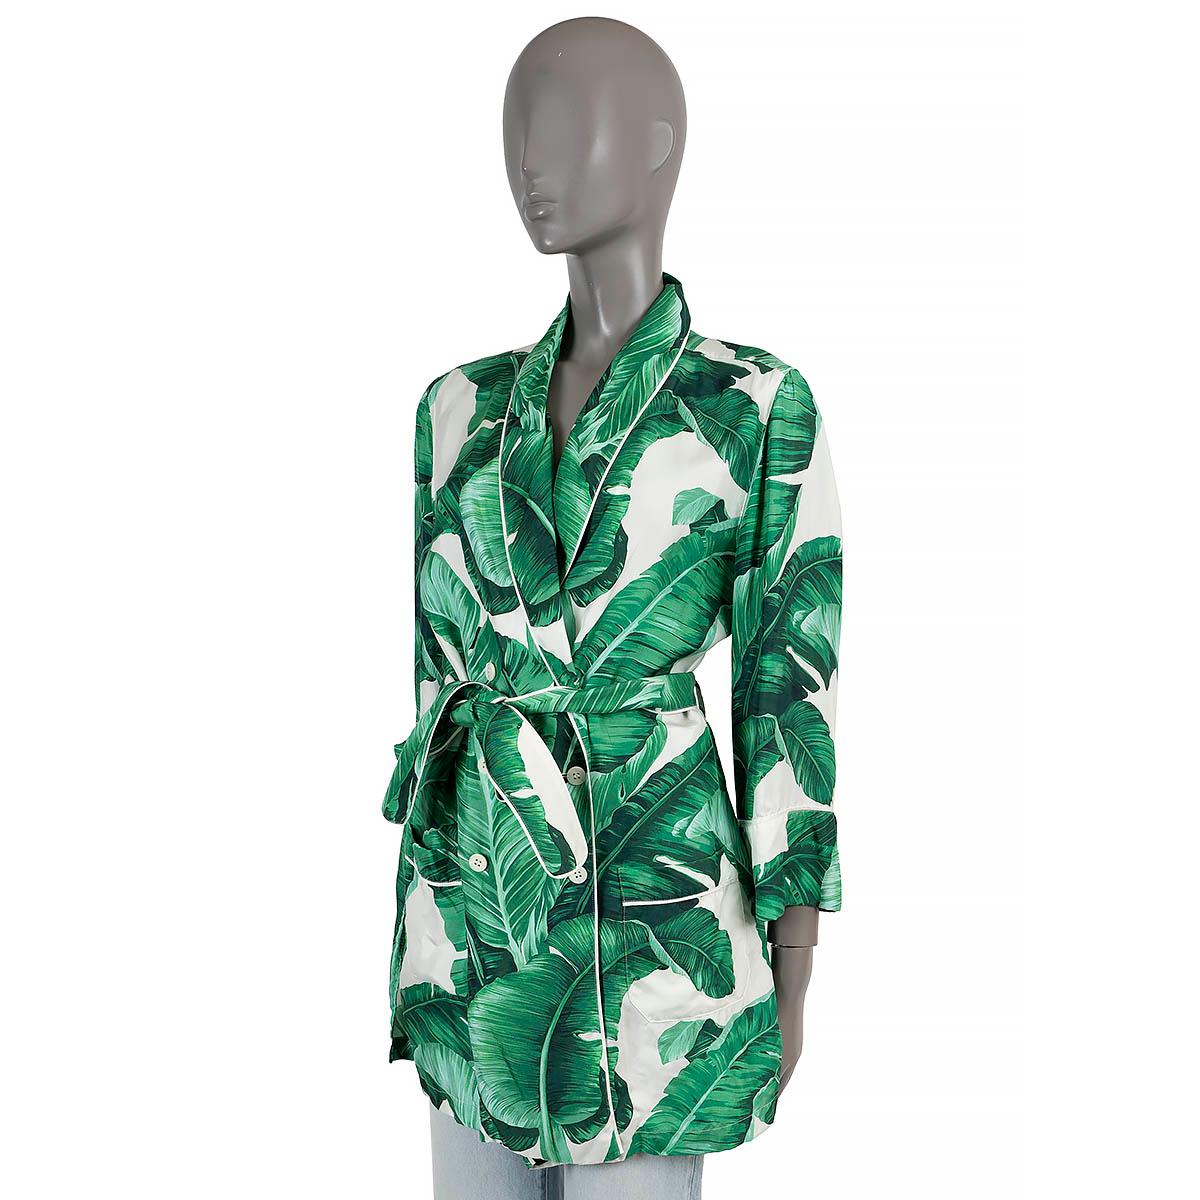 100% authentische Dolce & Gabbana Jacke mit Gürtel und Zweireiher aus grüner und weißer Seide (bitte beachten Sie, dass das Inhaltsetikett fehlt), mit Bananenblattdruck. Mit Schalkragen und zwei aufgesetzten Taschen. Wird mit weißen Knöpfen auf der